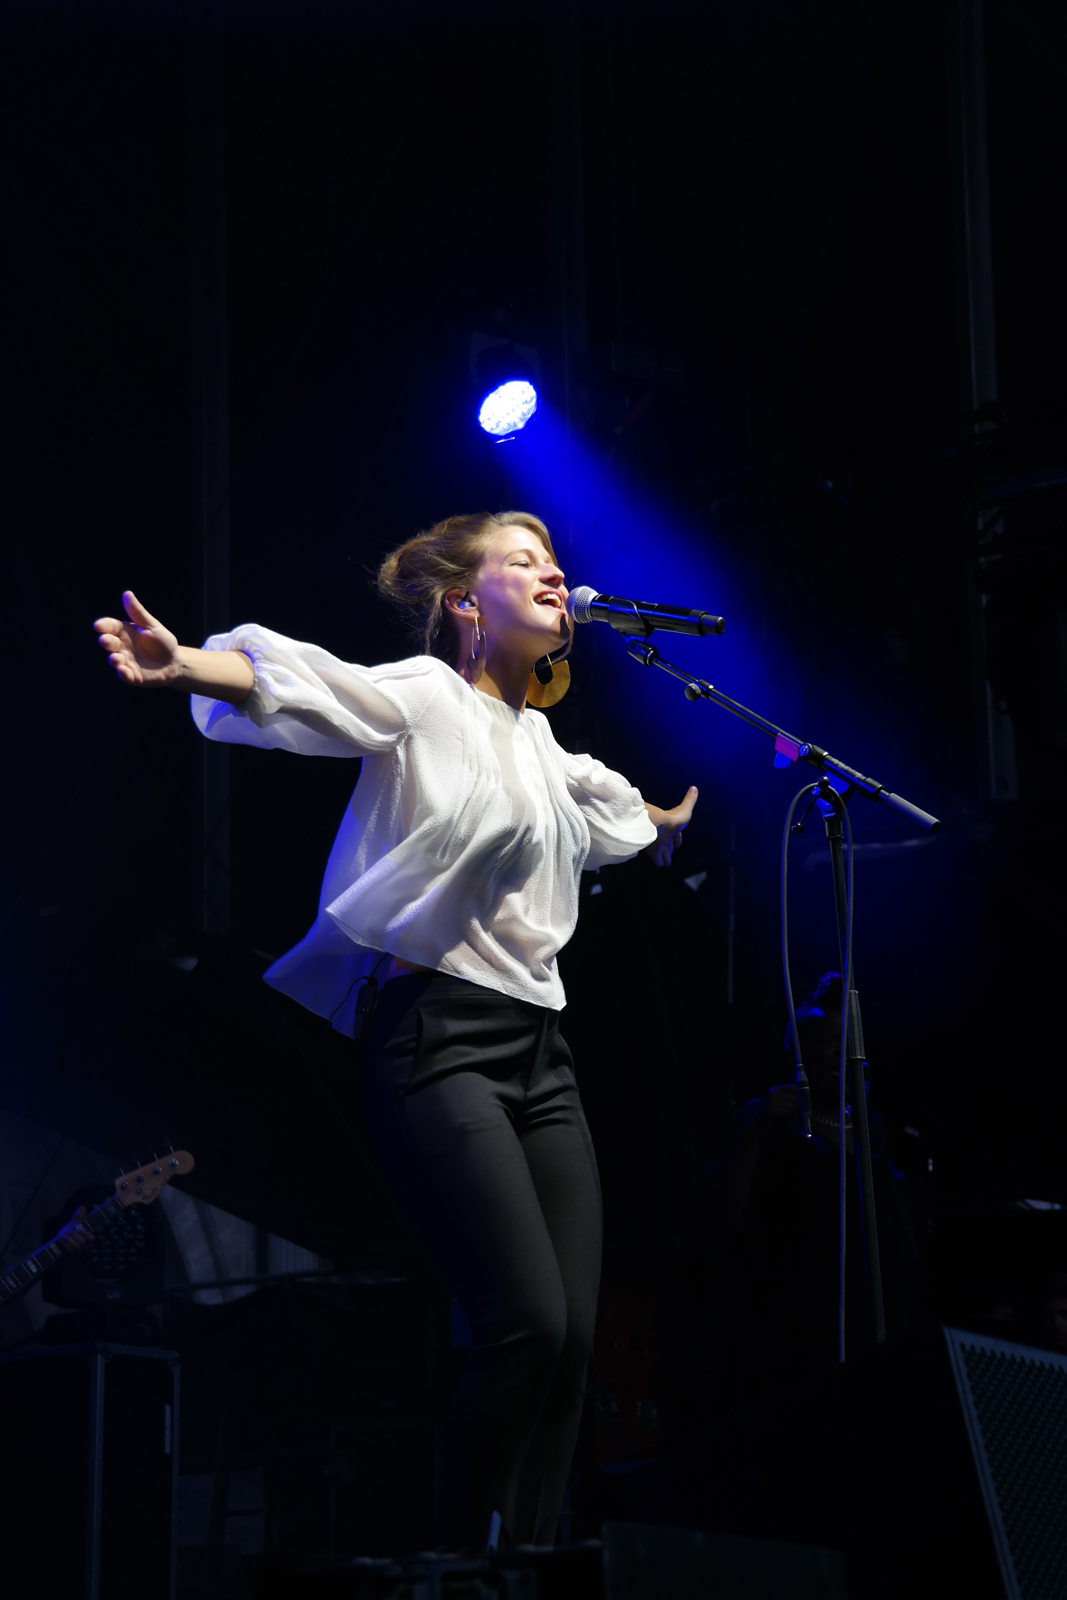 Selah-Sue-live-concert-festival-fnaclive-2015-scène-stage-tournée-alone-album-reason-tour-10-ans-because-music-photo-by-united-states-of-paris-blog